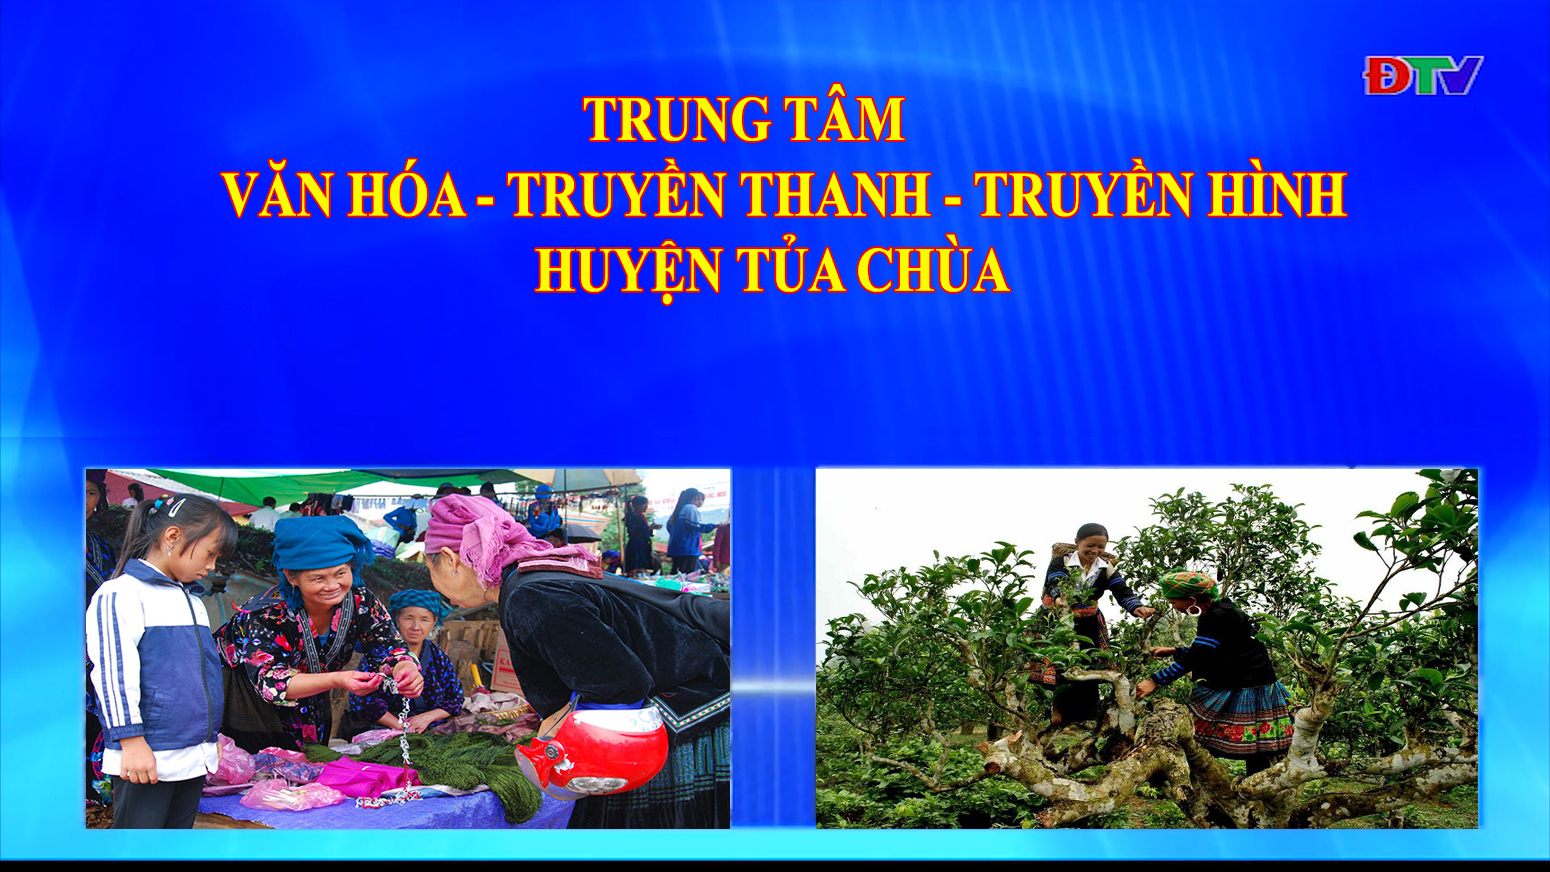 Trung tâm Văn hóa Truyền thanh Truyền hình huyện Tủa Chùa (Ngày 12-6-2020)